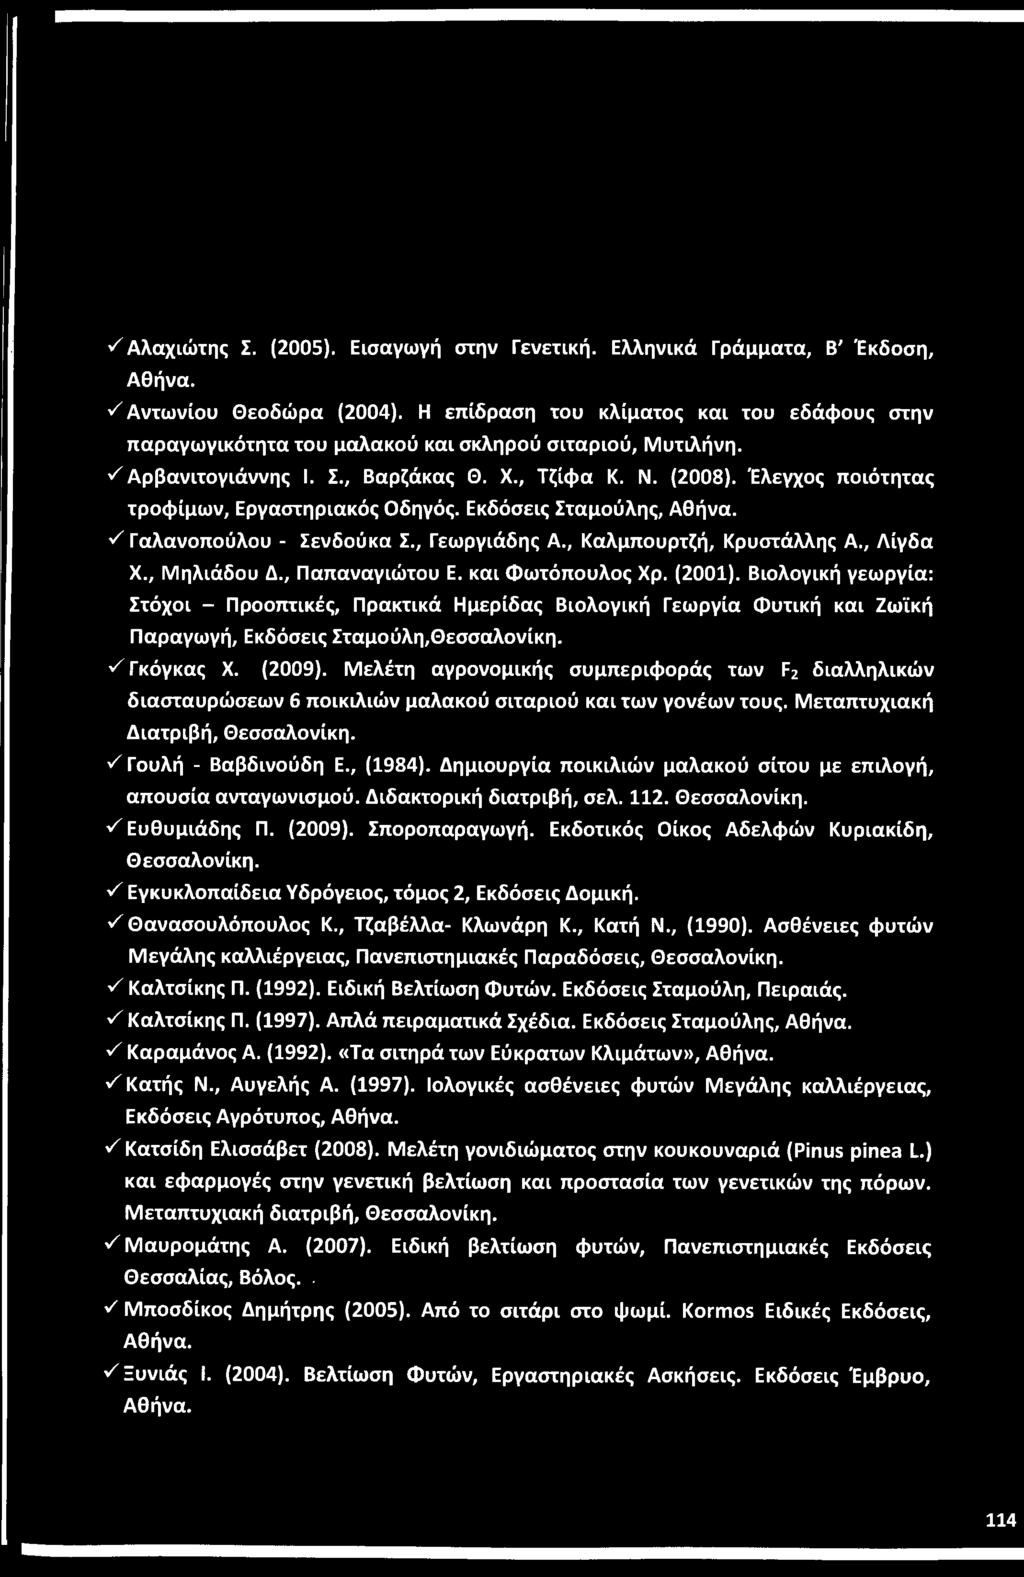 ^ Αλαχιώτης Σ. (2005). Εισαγωγή στην Γενετική. Ελληνικά Γράμματα, Β' Έκδοση, Αθήνα. S Αντωνίου Θεοδώρα (2004).